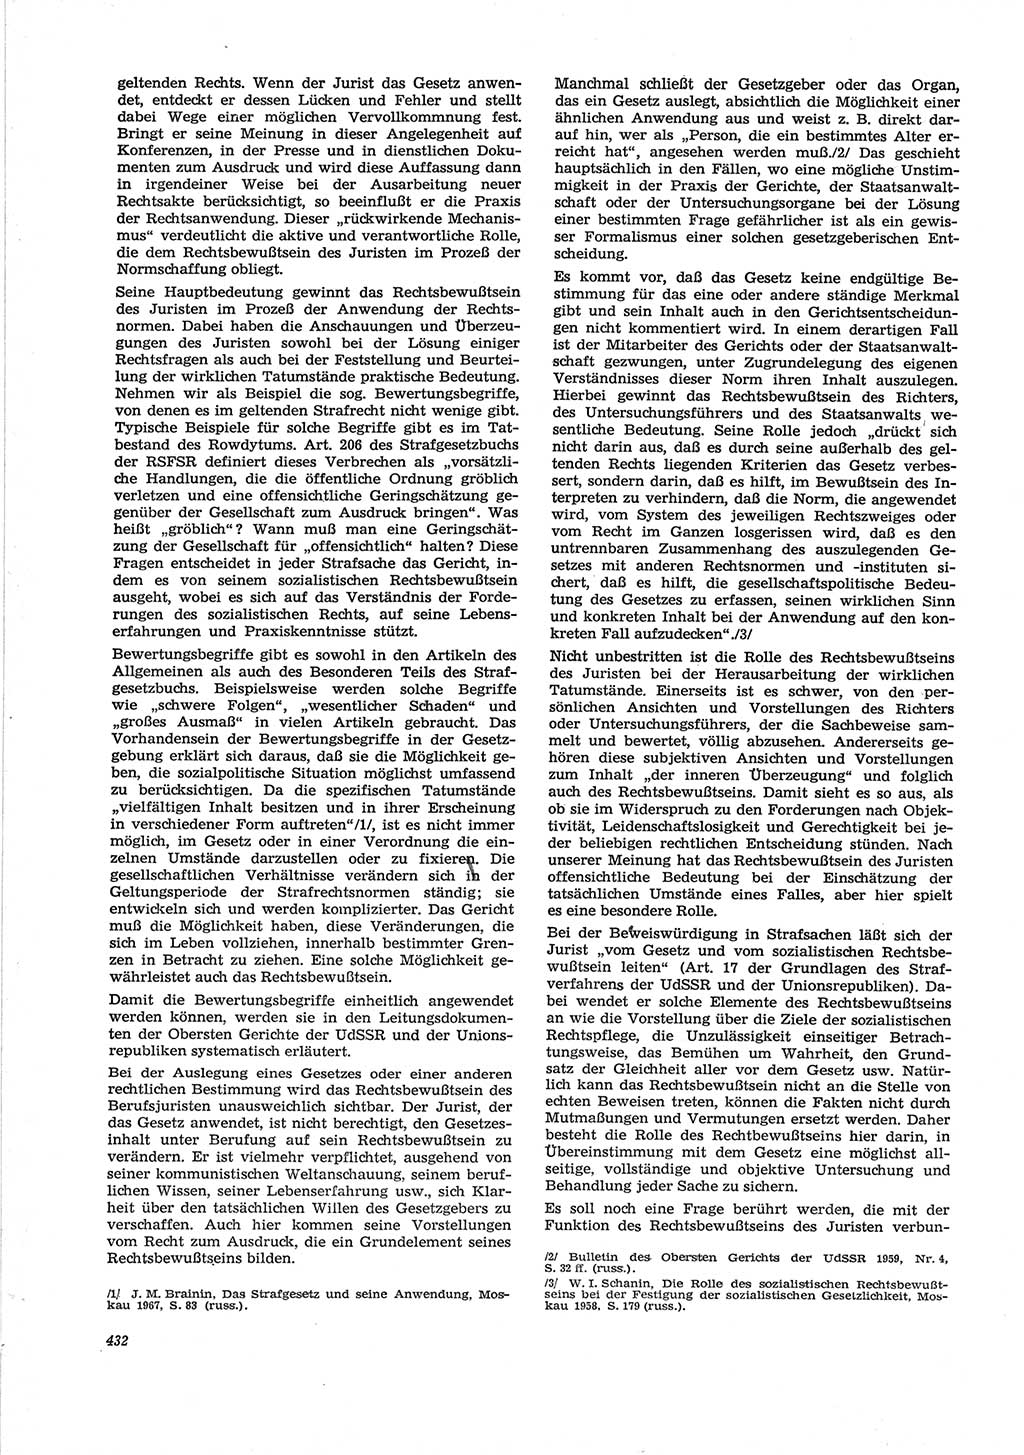 Neue Justiz (NJ), Zeitschrift für Recht und Rechtswissenschaft [Deutsche Demokratische Republik (DDR)], 28. Jahrgang 1974, Seite 432 (NJ DDR 1974, S. 432)